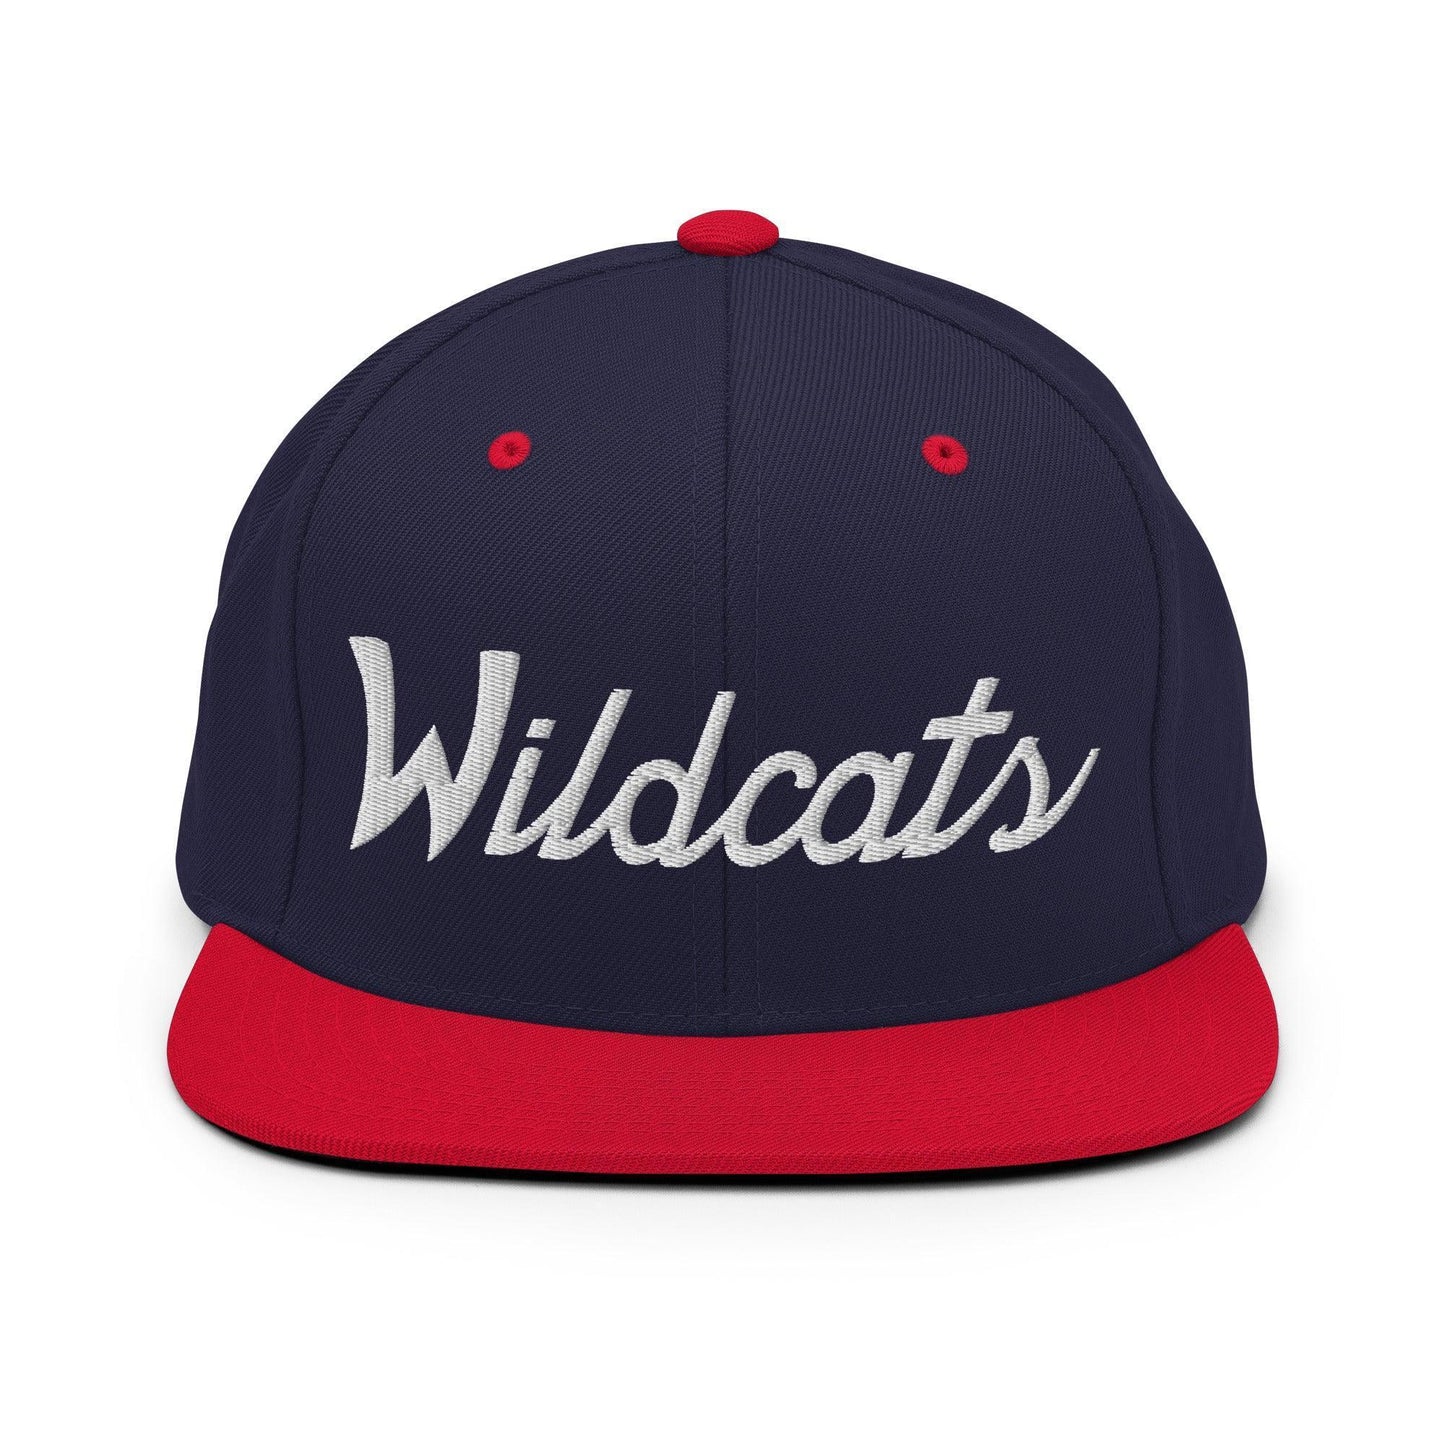 Wildcats School Mascot Script Snapback Hat Navy/ Red